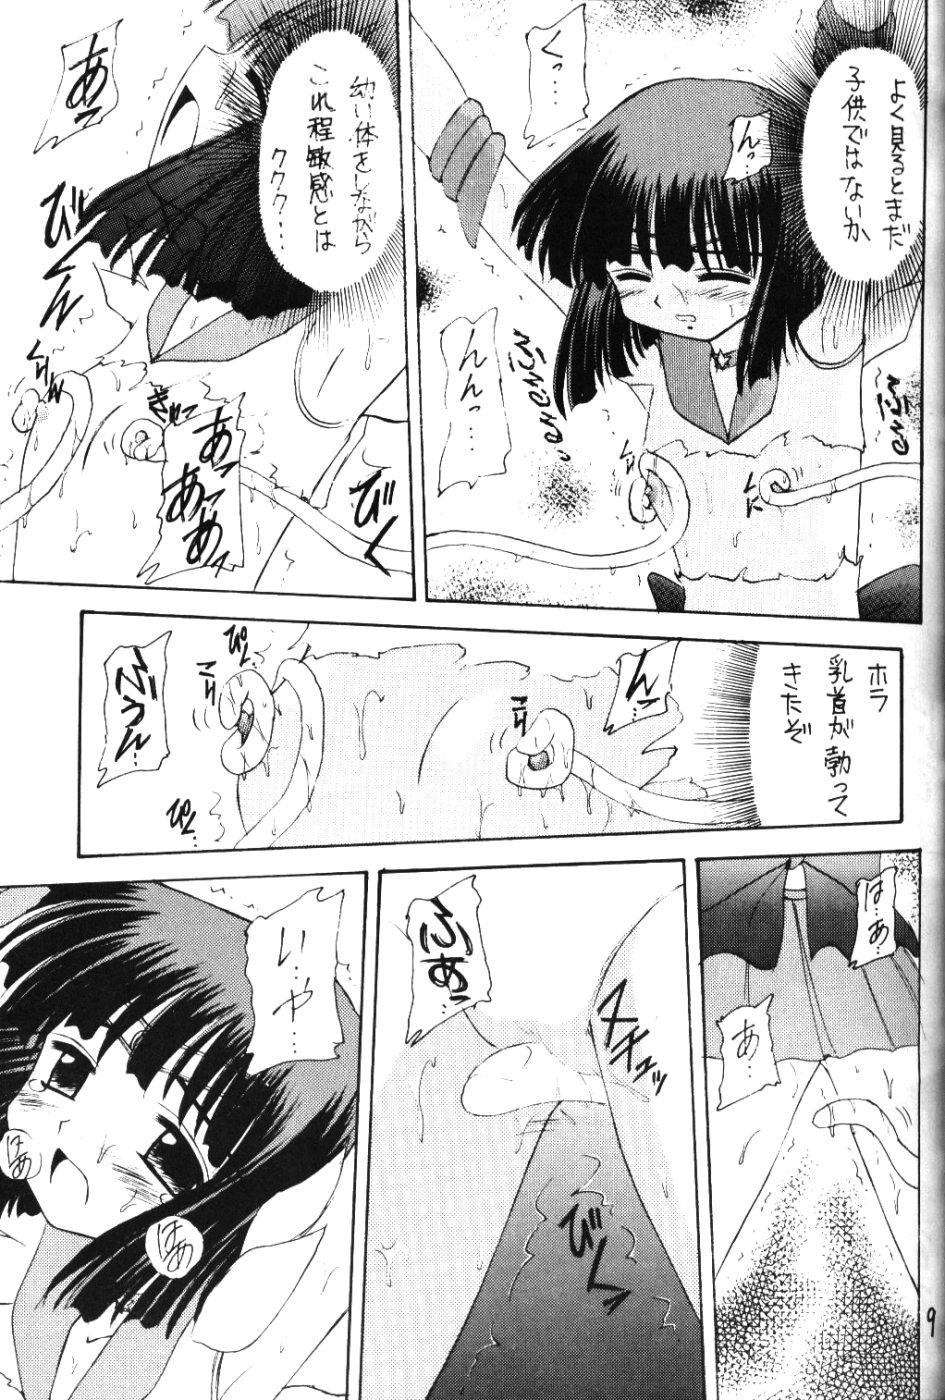 Ametuer Porn Hotaru VI - Sailor moon Gay Handjob - Page 8